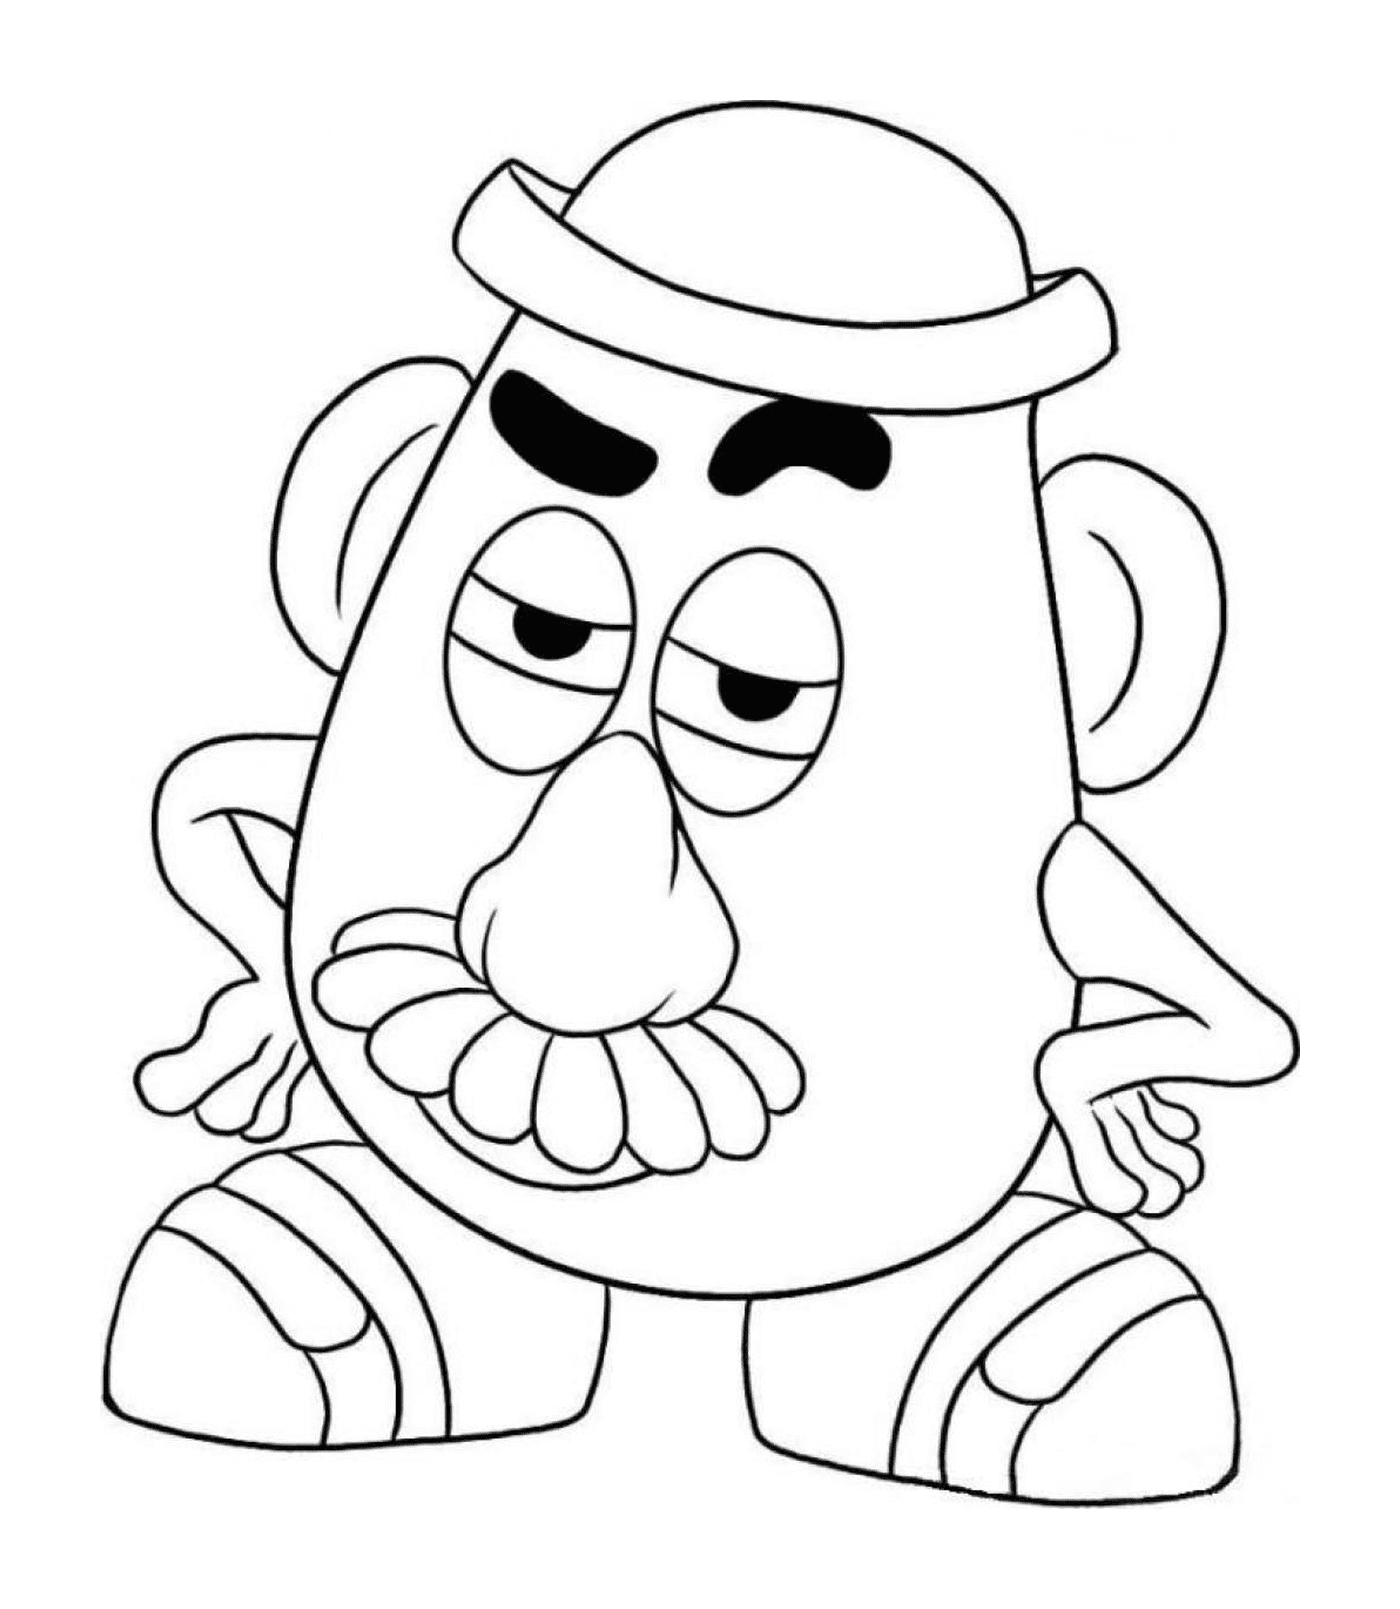  Monsieur Patate de Toy Story, anexando personagem 